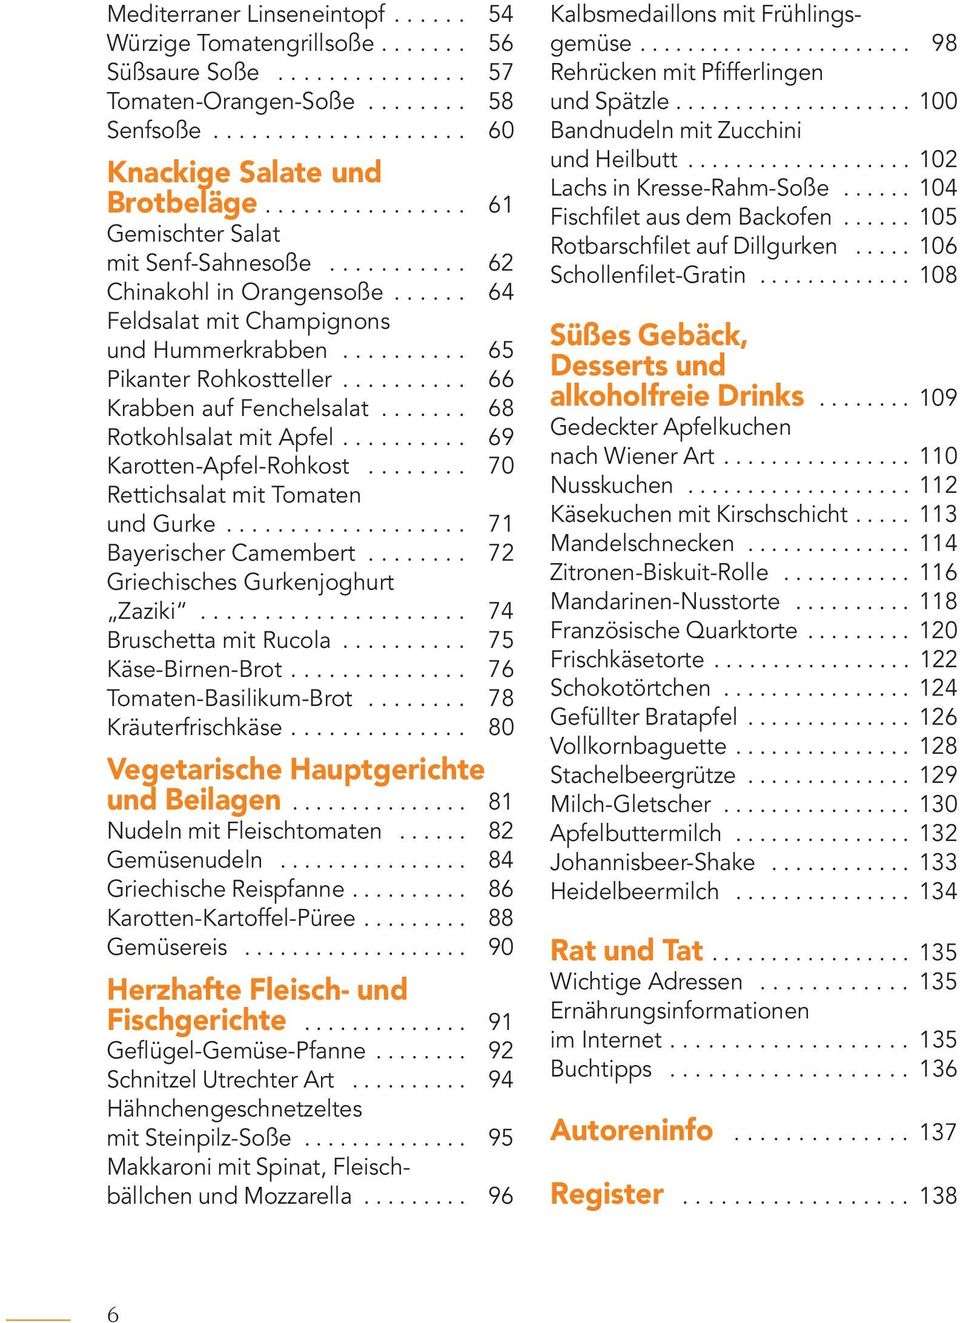 ......... 66 Krabben auf Fenchelsalat....... 68 Rotkohlsalat mit Apfel.......... 69 Karotten-Apfel-Rohkost........ 70 Rettichsalat mit Tomaten und Gurke................... 71 Bayerischer Camembert.